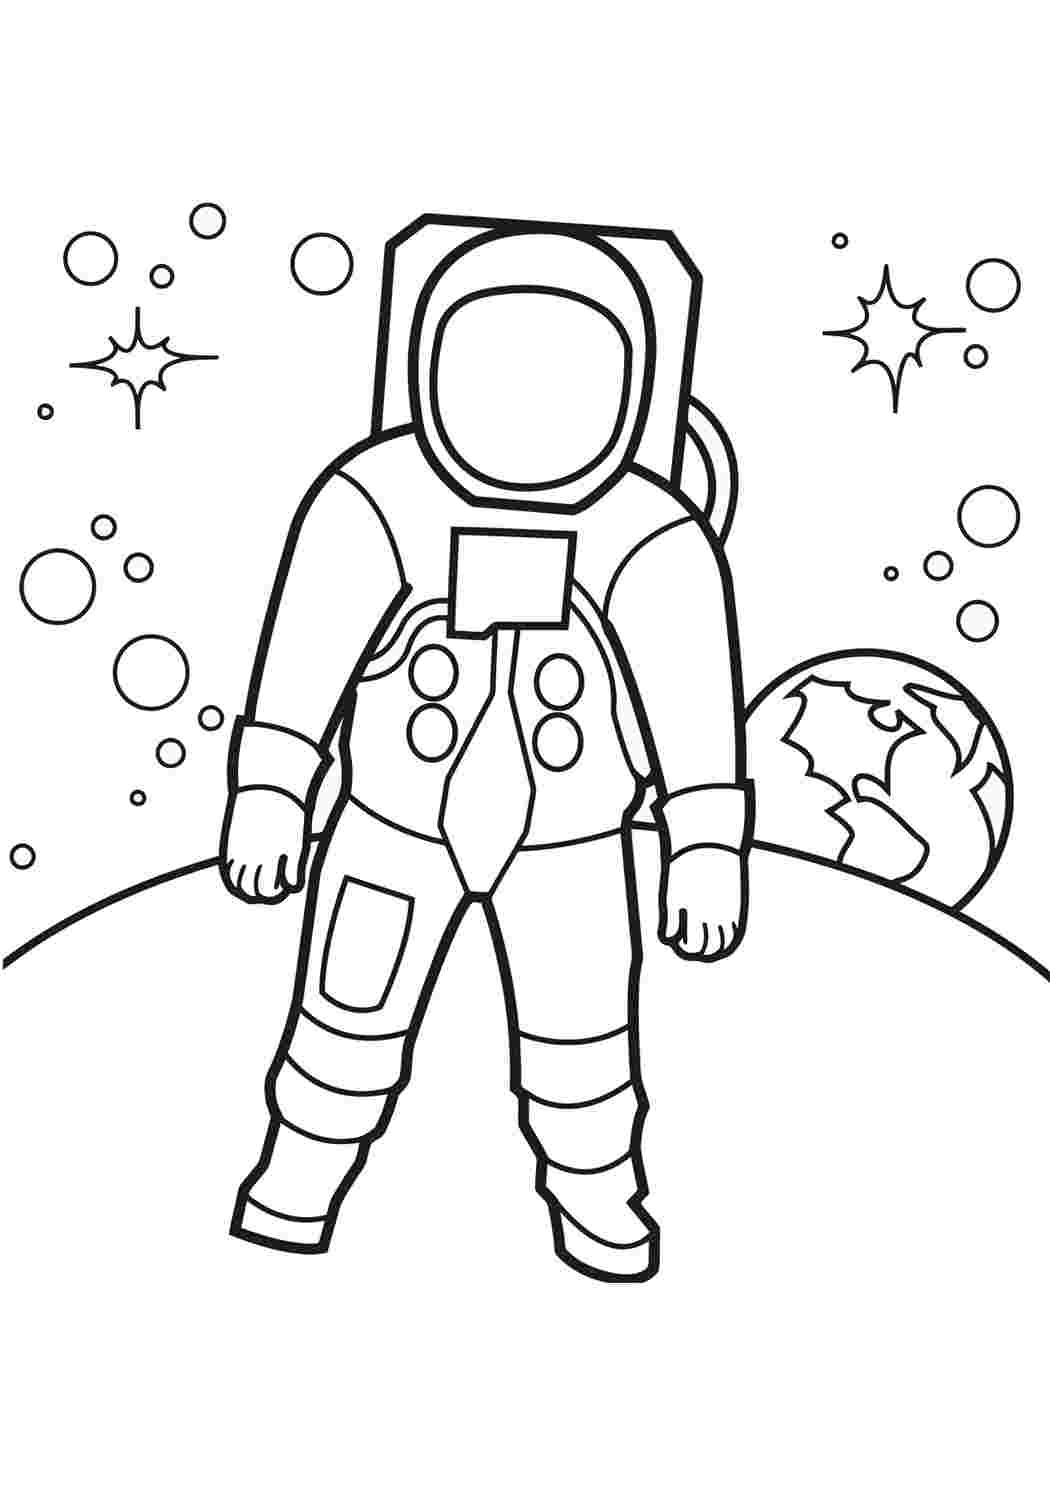 Космос раскраска для детей 3 4 лет. Космонавт раскраска для детей. Раскраска для малышей. Космос. Космонавтика раскраски для детей. Раскраска. В космосе.